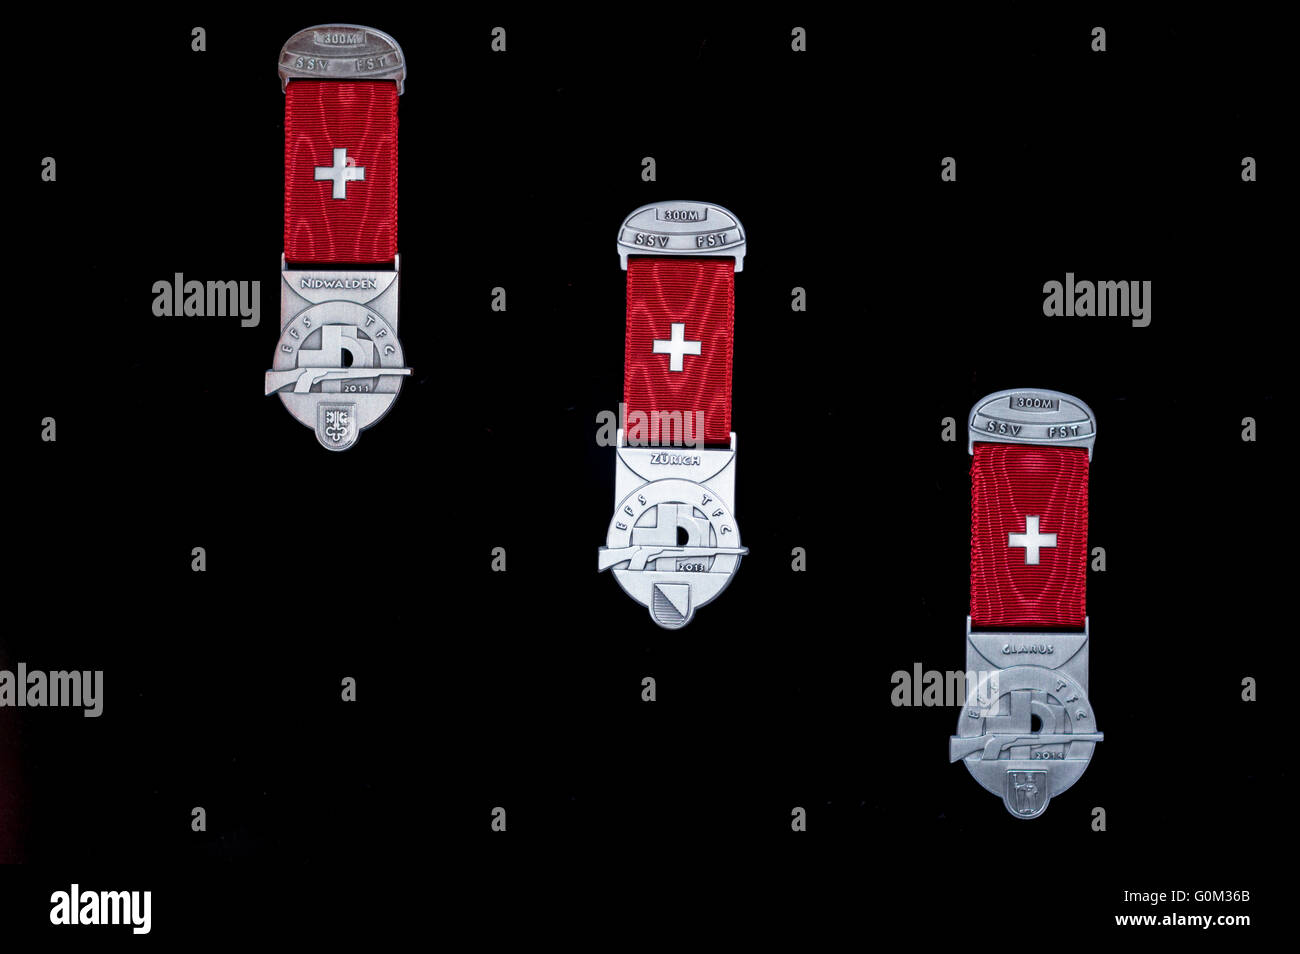 Medallas de Swiss Feldschiessen competiciones de tiro. Nombre común de estas medallas es de tipo Kranz o Kranzauszeichnung. Fondo negro Foto de stock